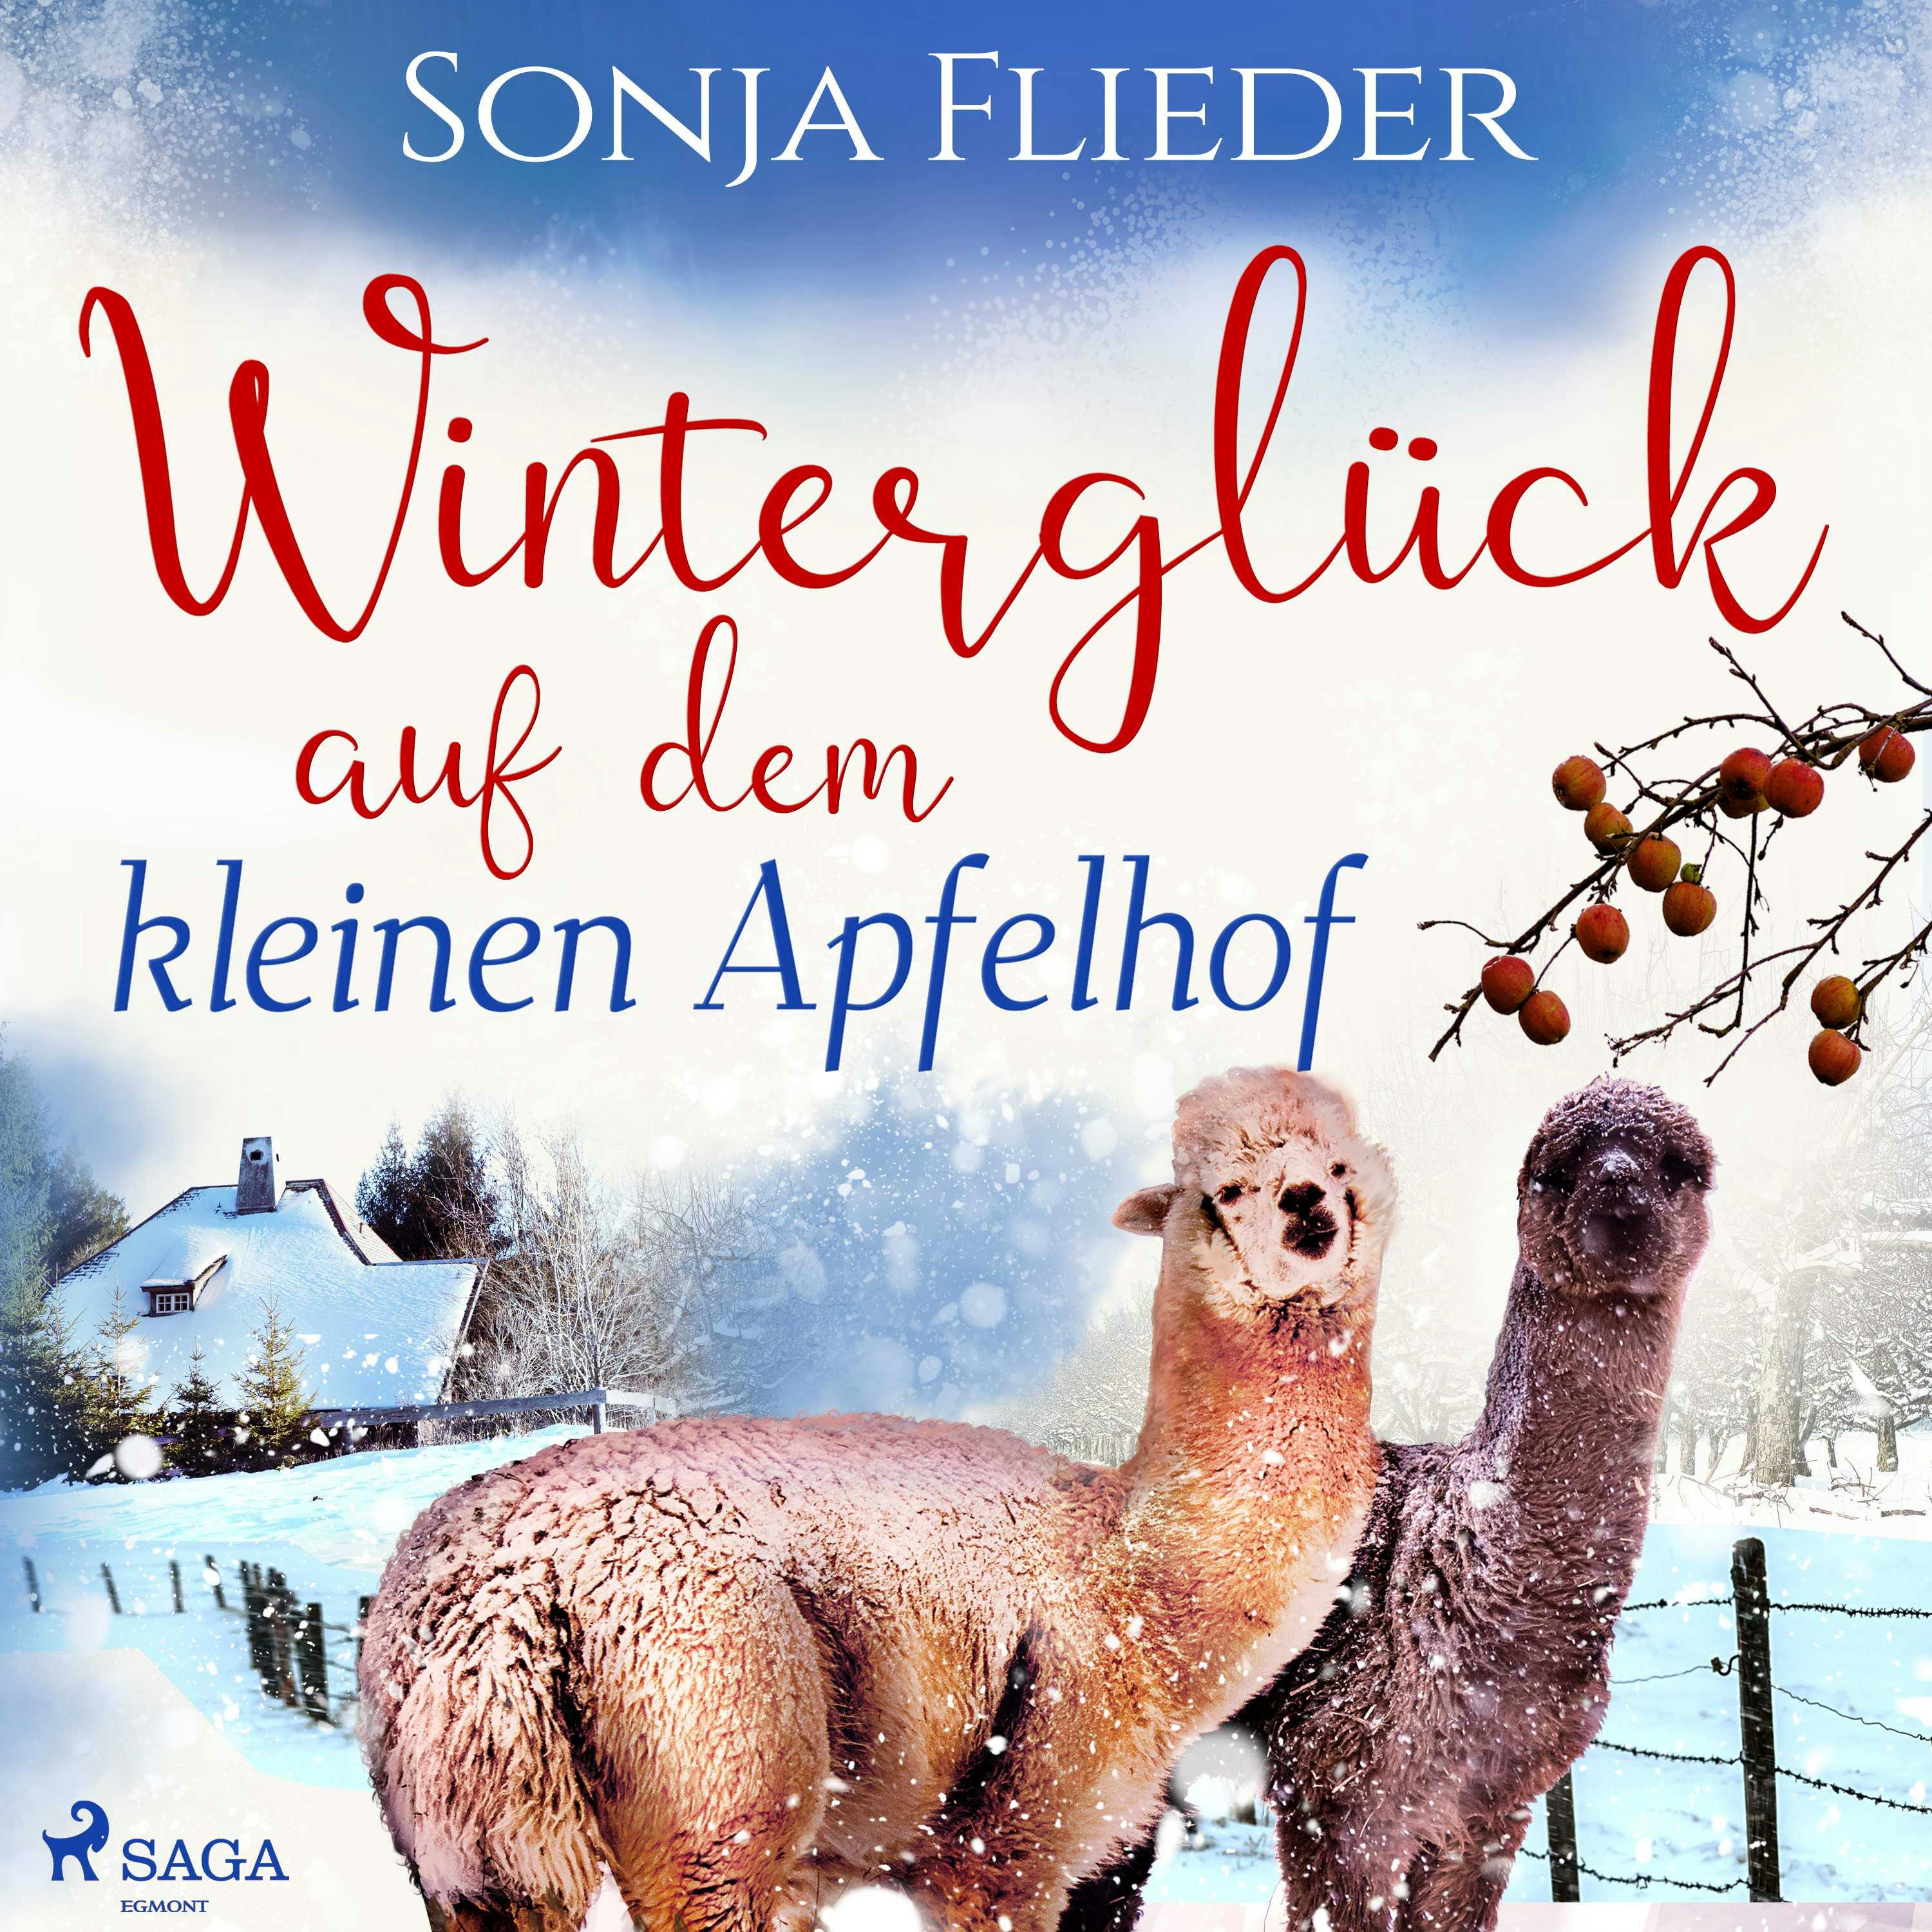 Winterglück auf dem kleinen Apfelhof - Sonja Flieder